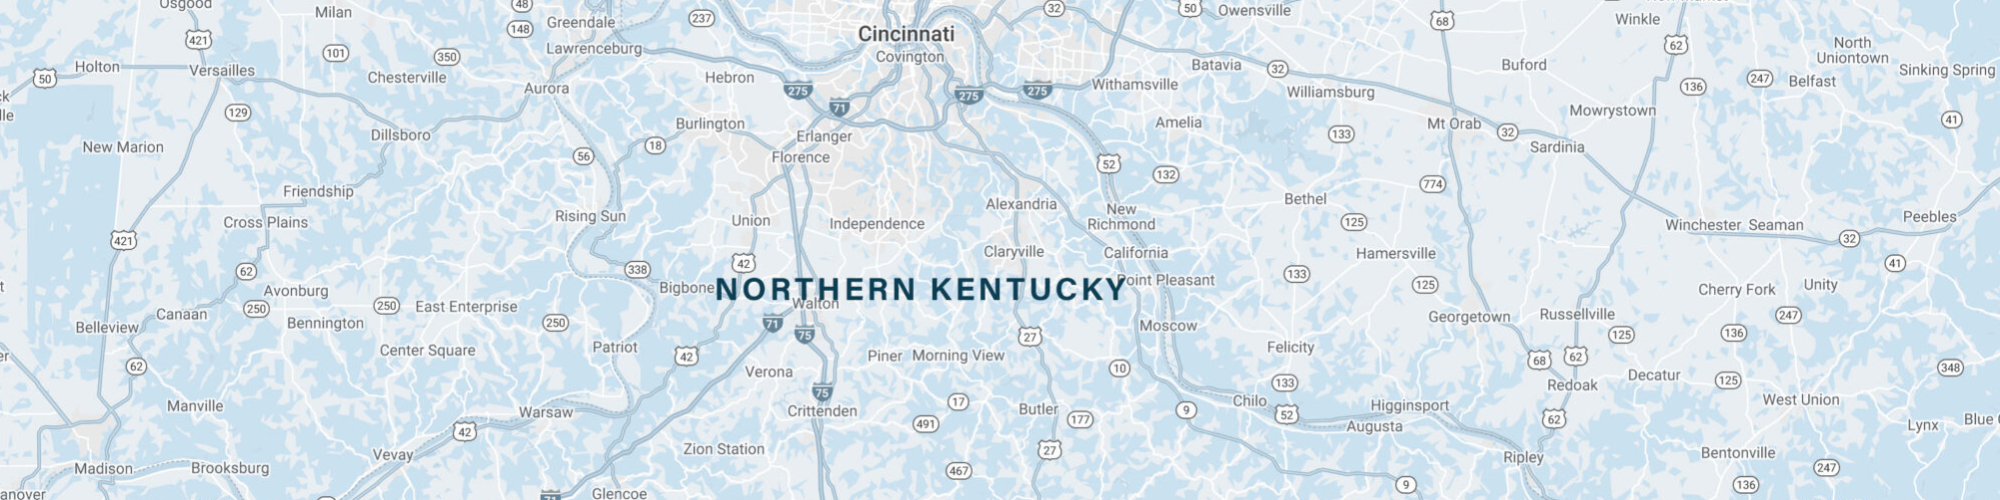 Northern Kentucky Map